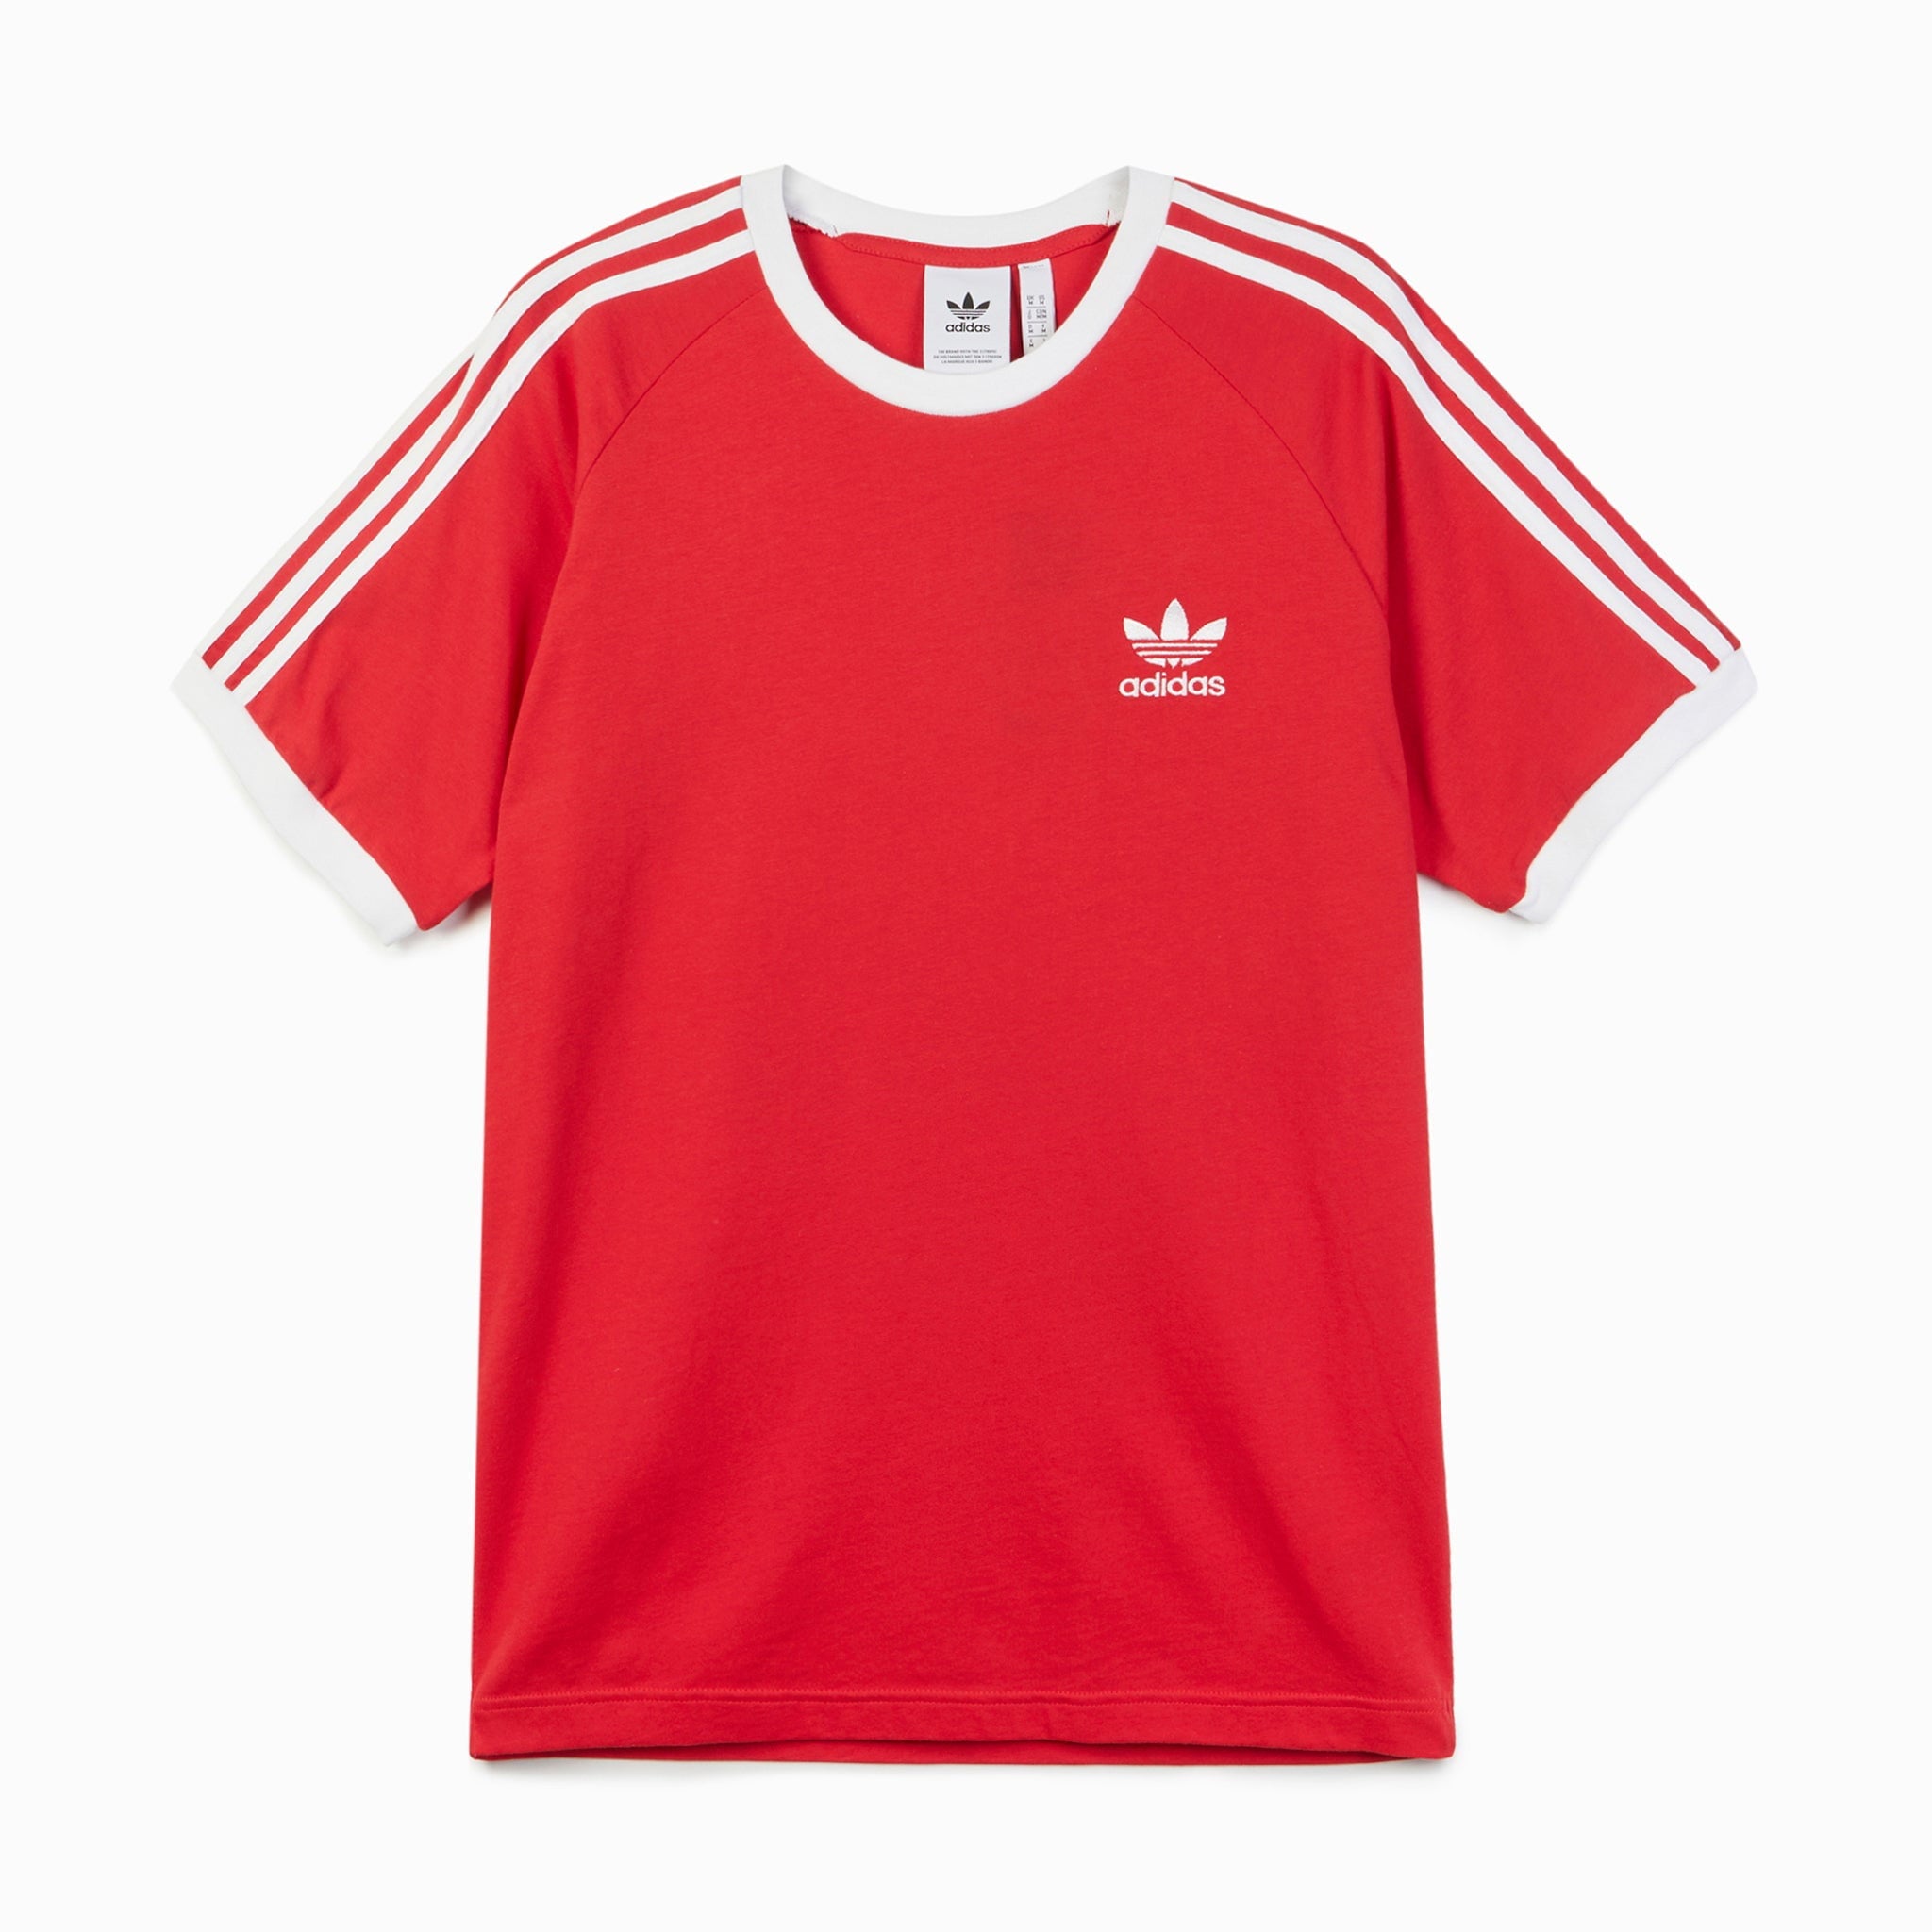 Adidas Originals 3 Stripe T-Shirt Mens - Red The Original Factory Shop